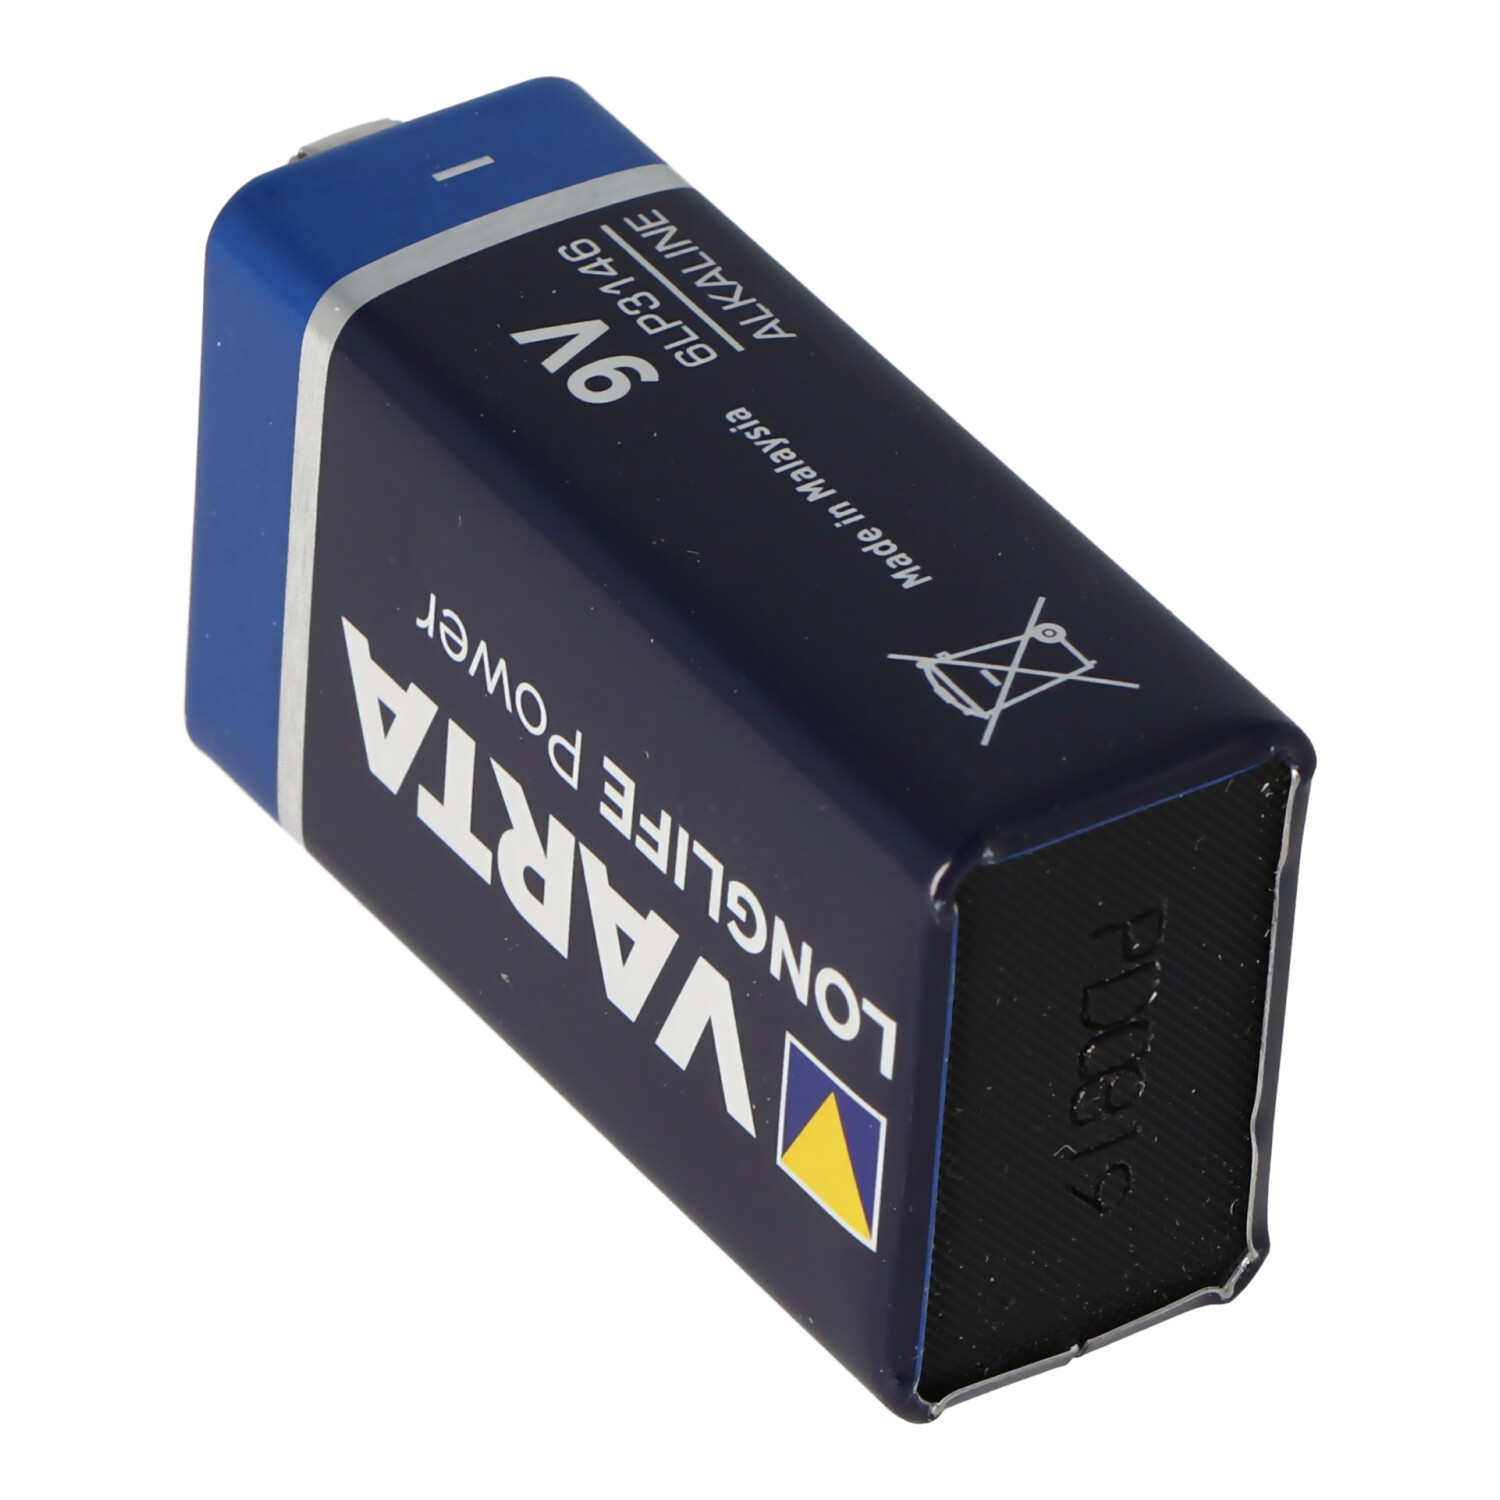 Varta 9V E-Block Batterie 4922 Longlife Power (ehem. High Energy) 1-er Blister 10er Packung